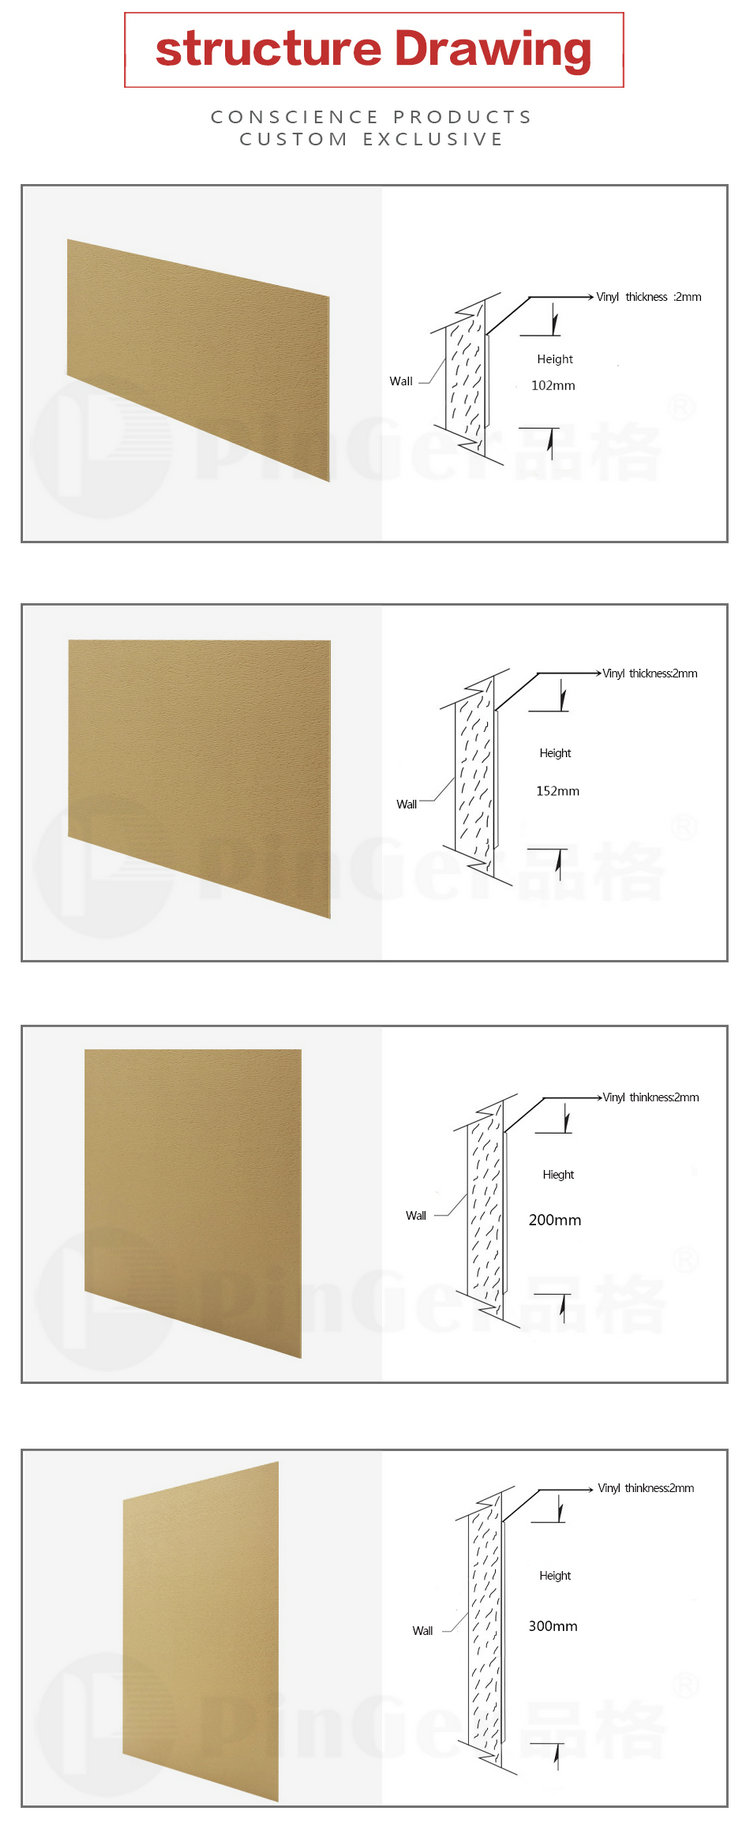 Door Wall Protective Vinyl Wall Board